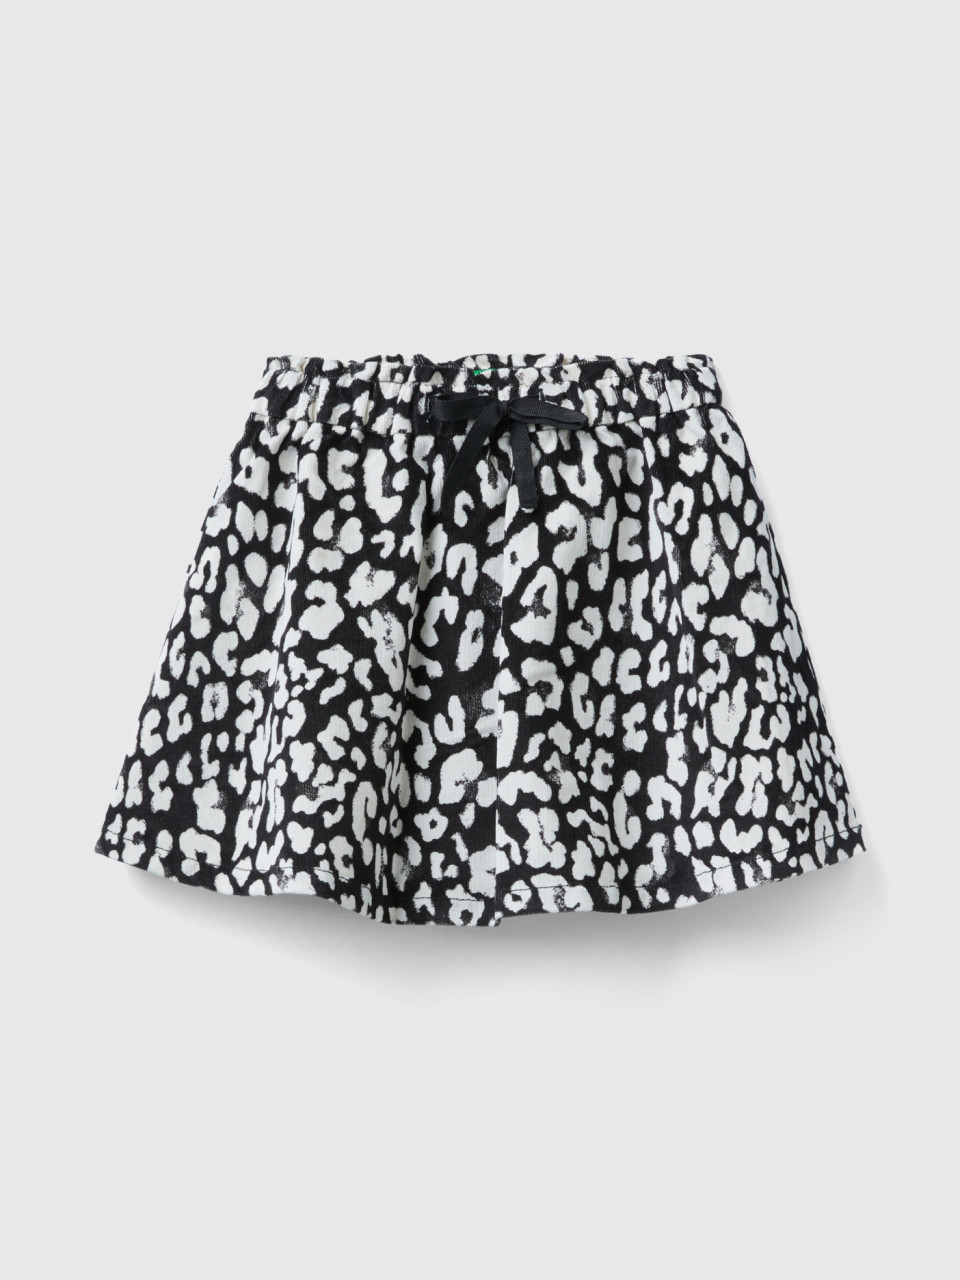 Benetton, Animal Print Velvet Mini Skirt, Multi-color, Kids